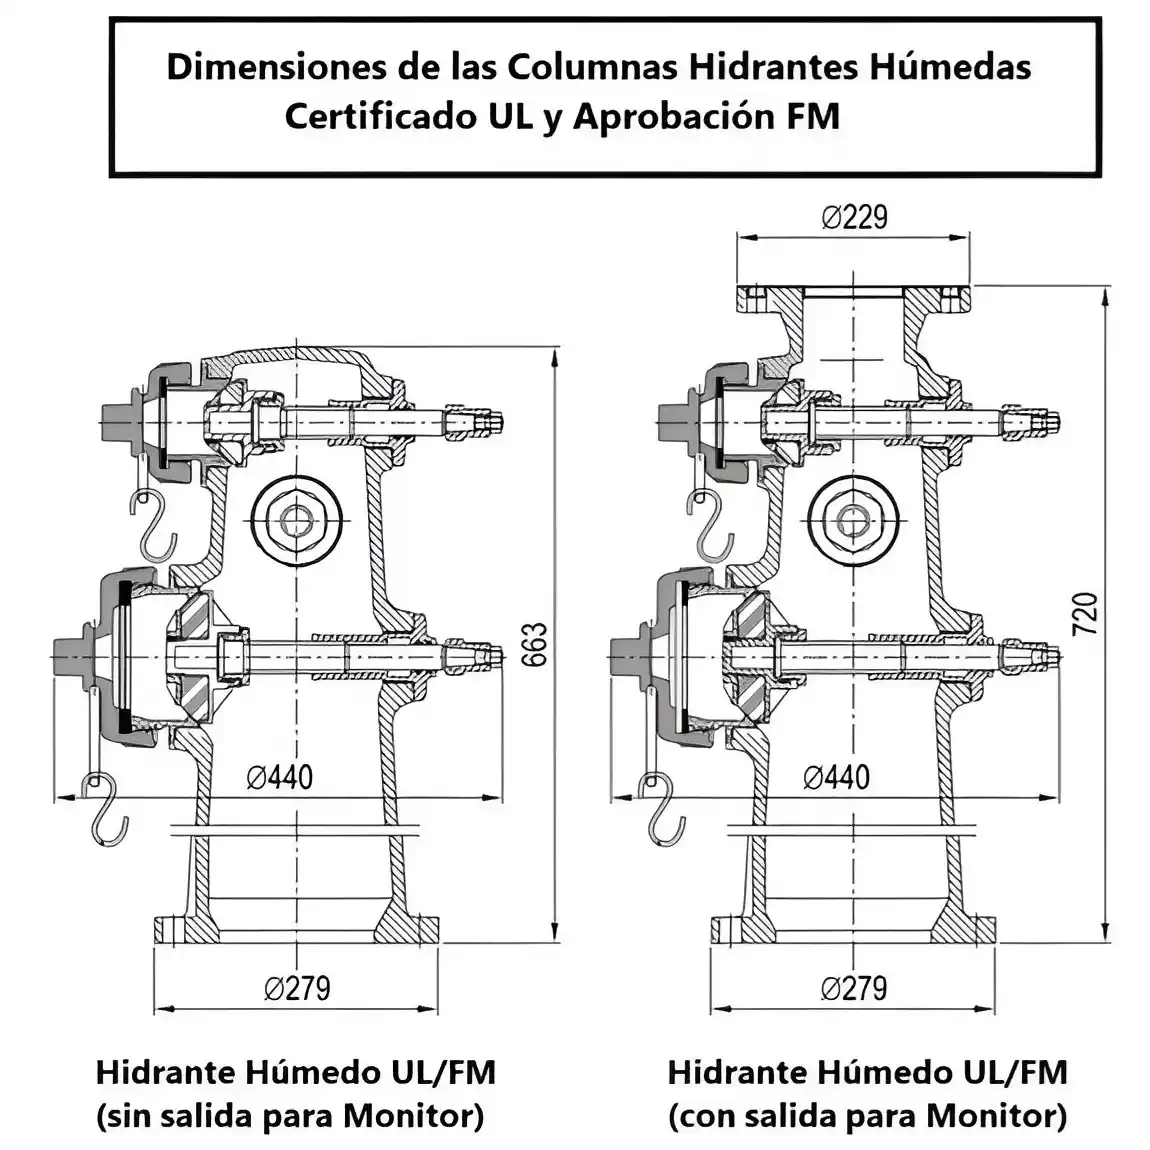 Medidas de Hidrante Contra Incendios Húmedo certificado UL y FM - Zensitec